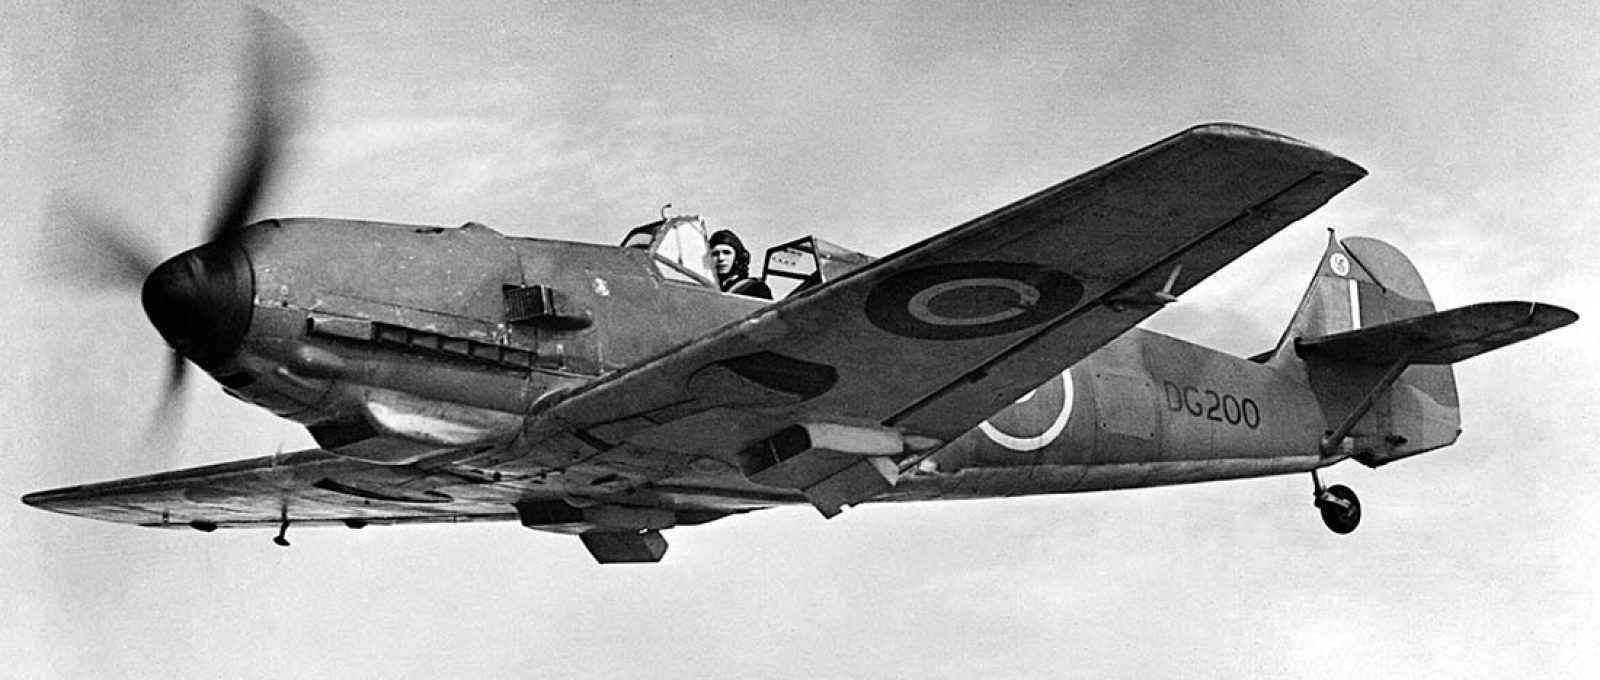 Messerschmitt Bf 109E capturado pelos britânicos e re-designado DG200, em voo sem a cobertura da cabine, removida (e nunca substituída) para que H. Hayworth, piloto de testes da Rolls Royce com cerca de 2 m de altura, coubesse na aeronave (Foto: IWM/Wikimedia Commons).